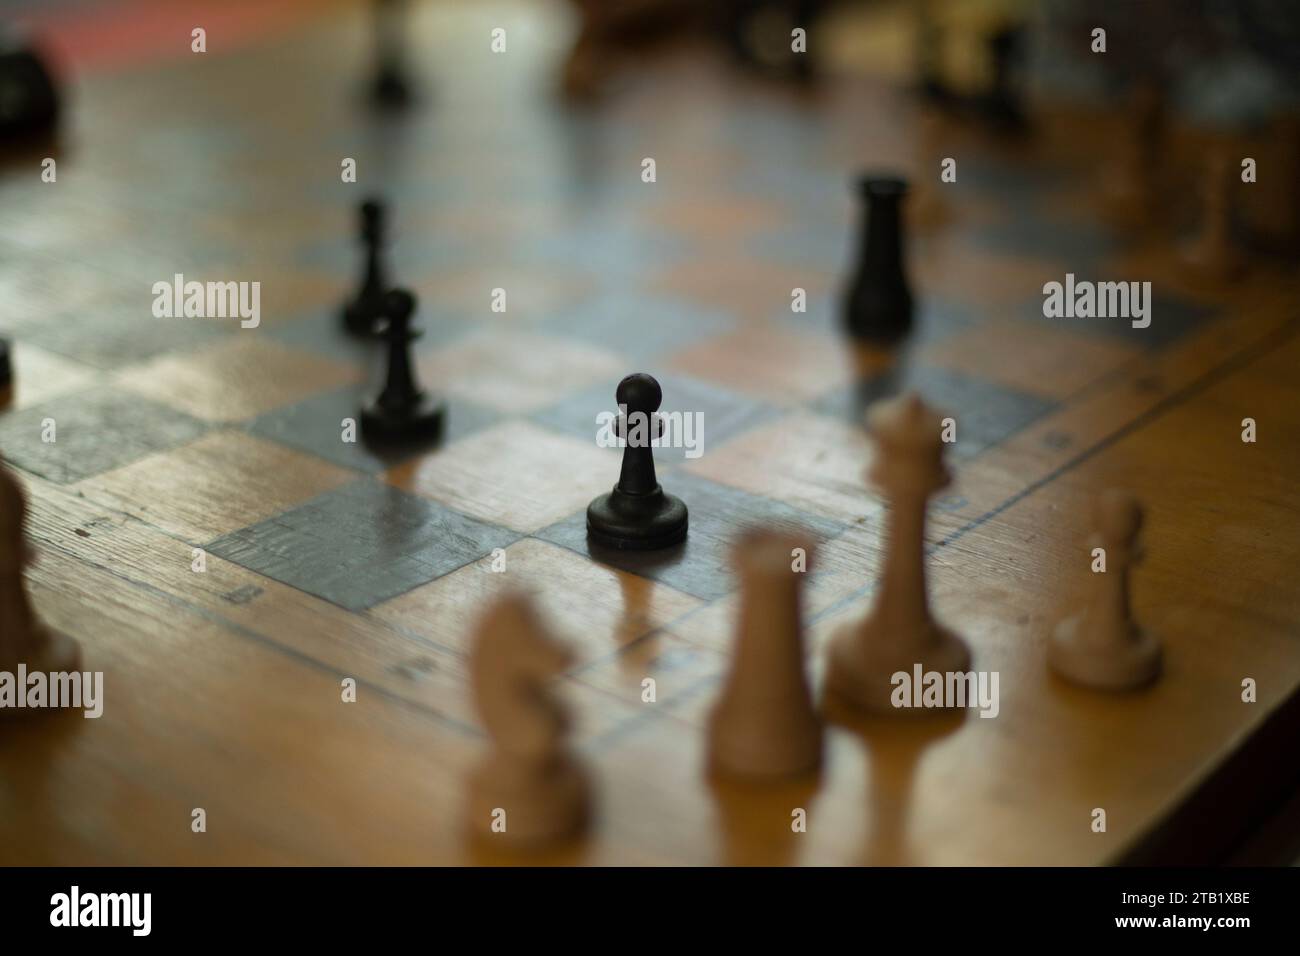 Spiel des Schachs. Sportwettbewerb. Schachfiguren an Bord. Stockfoto